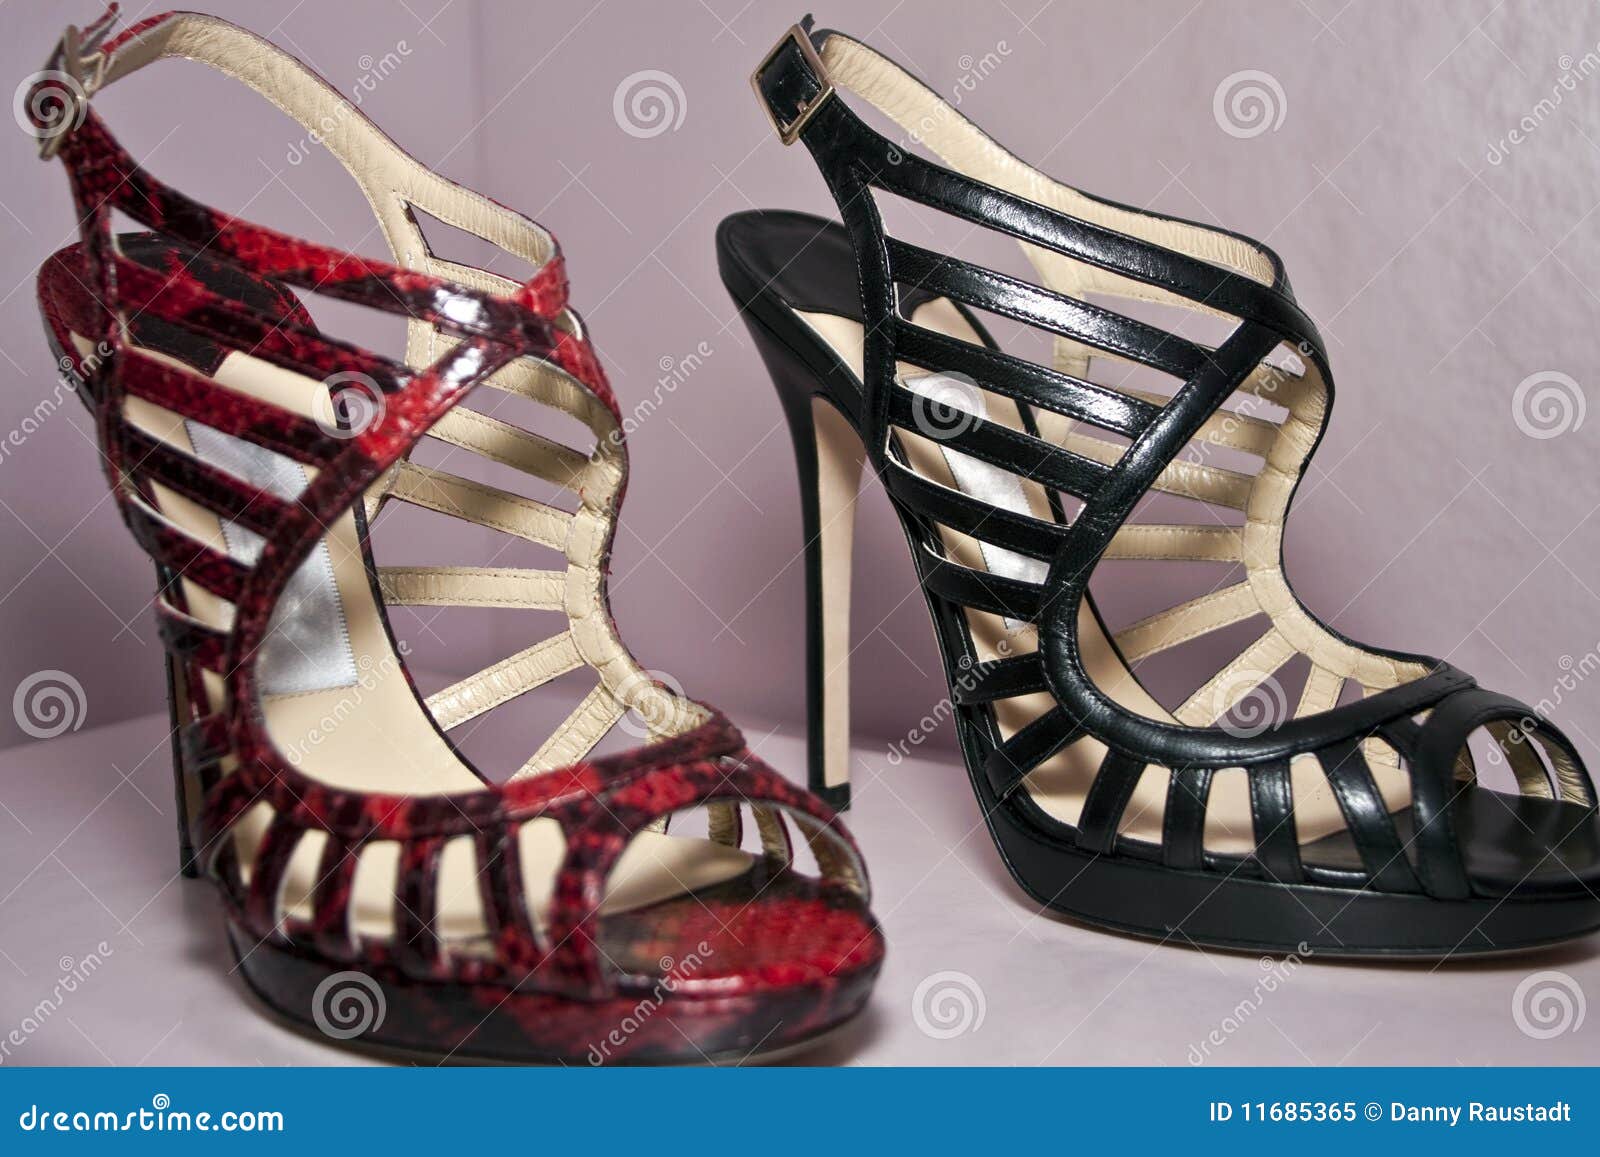 stylish high heel shoes